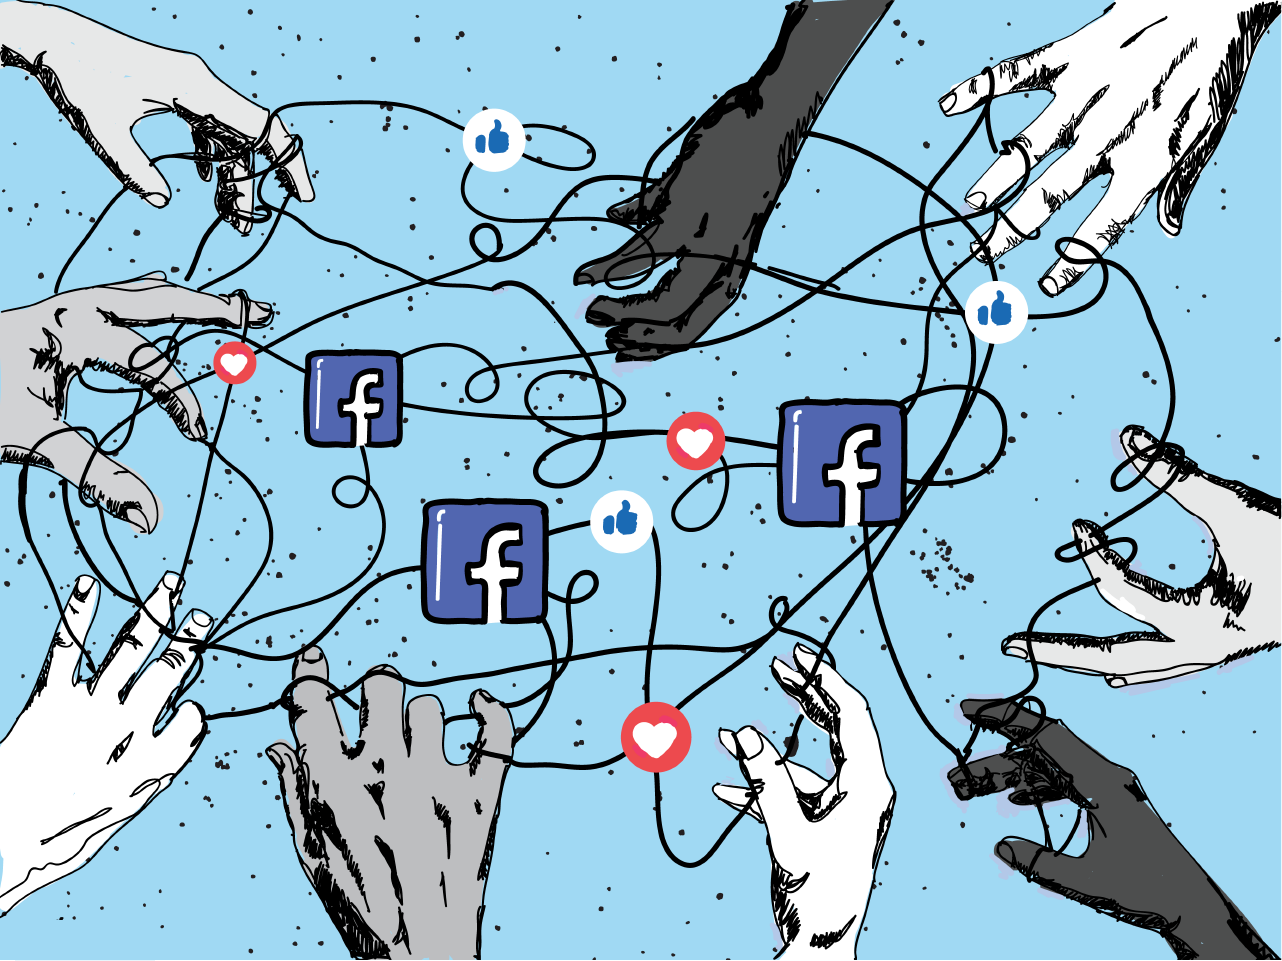 Funcionários do Facebook confiam menos na liderança da empresa, revela pesquisa interna